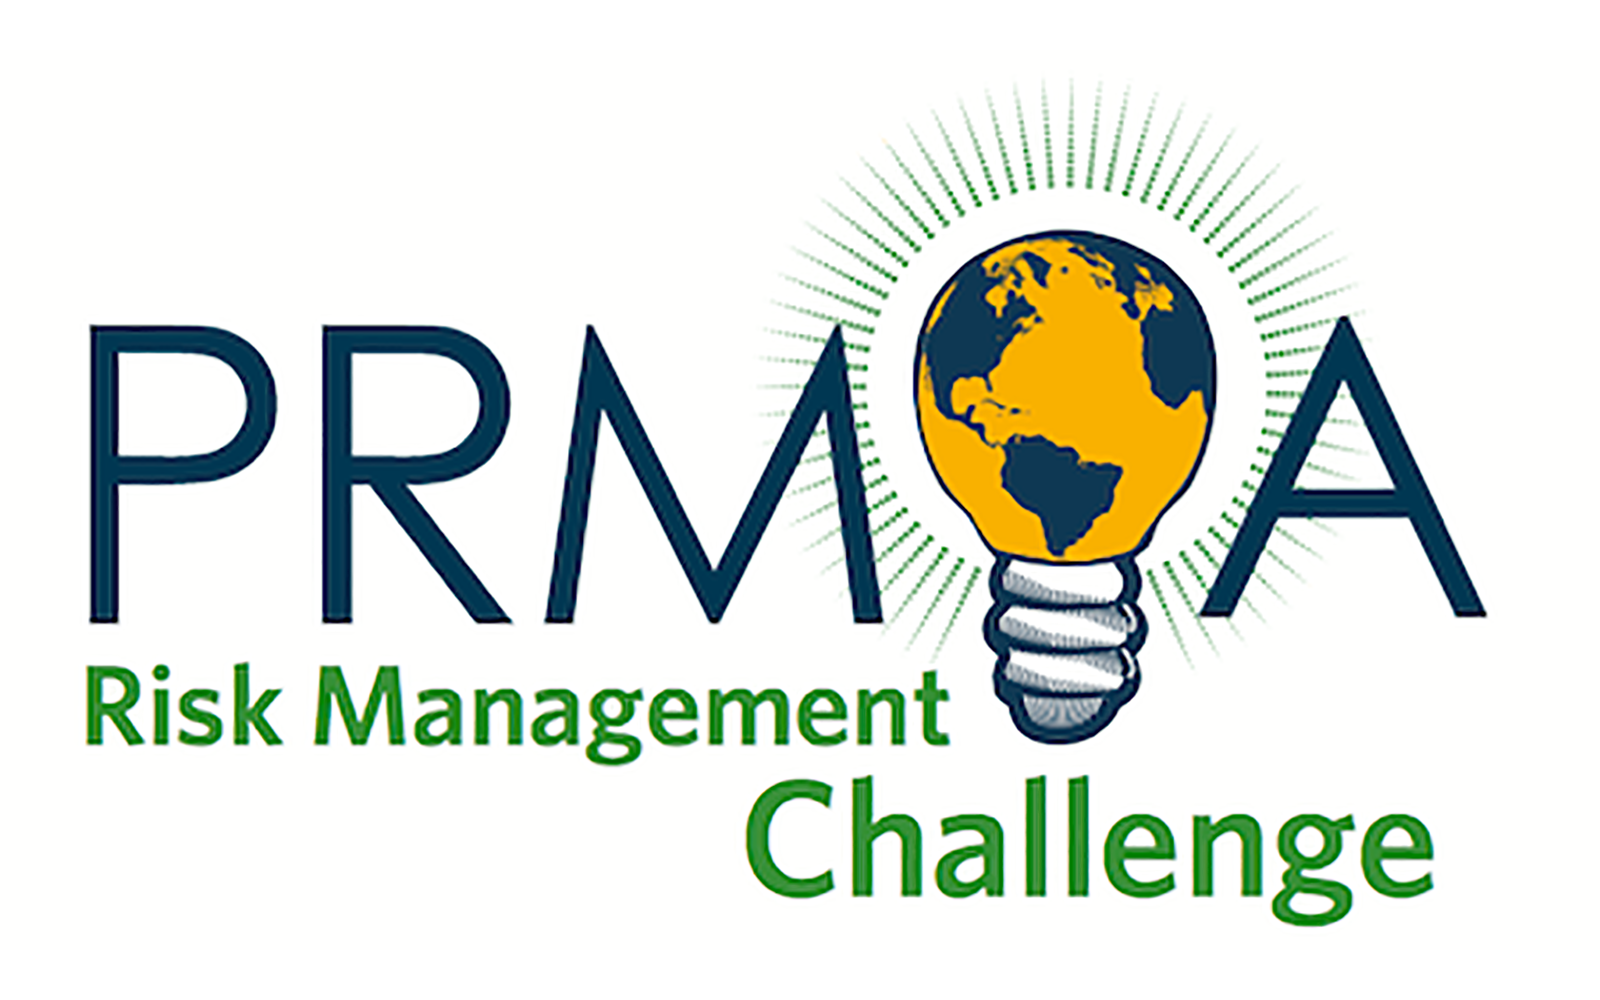 PRMIA Risk Management Challenge